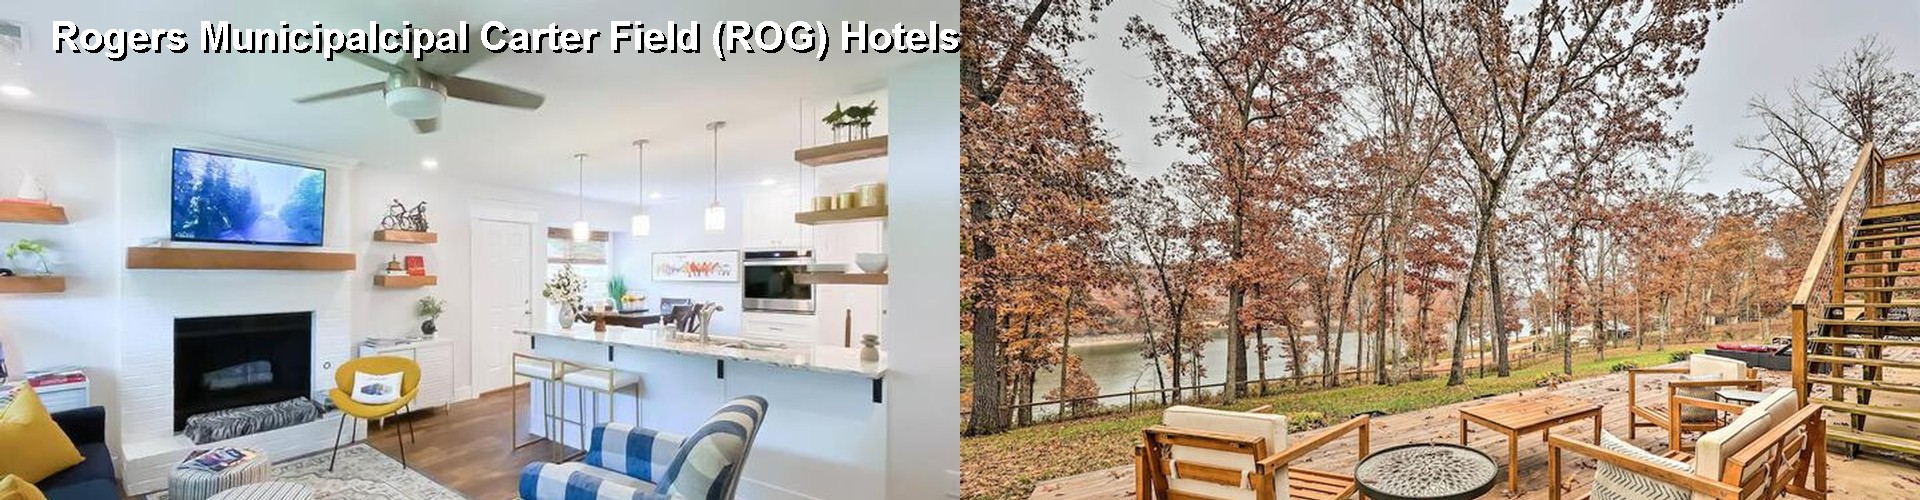 5 Best Hotels near Rogers Municipalcipal Carter Field (ROG)